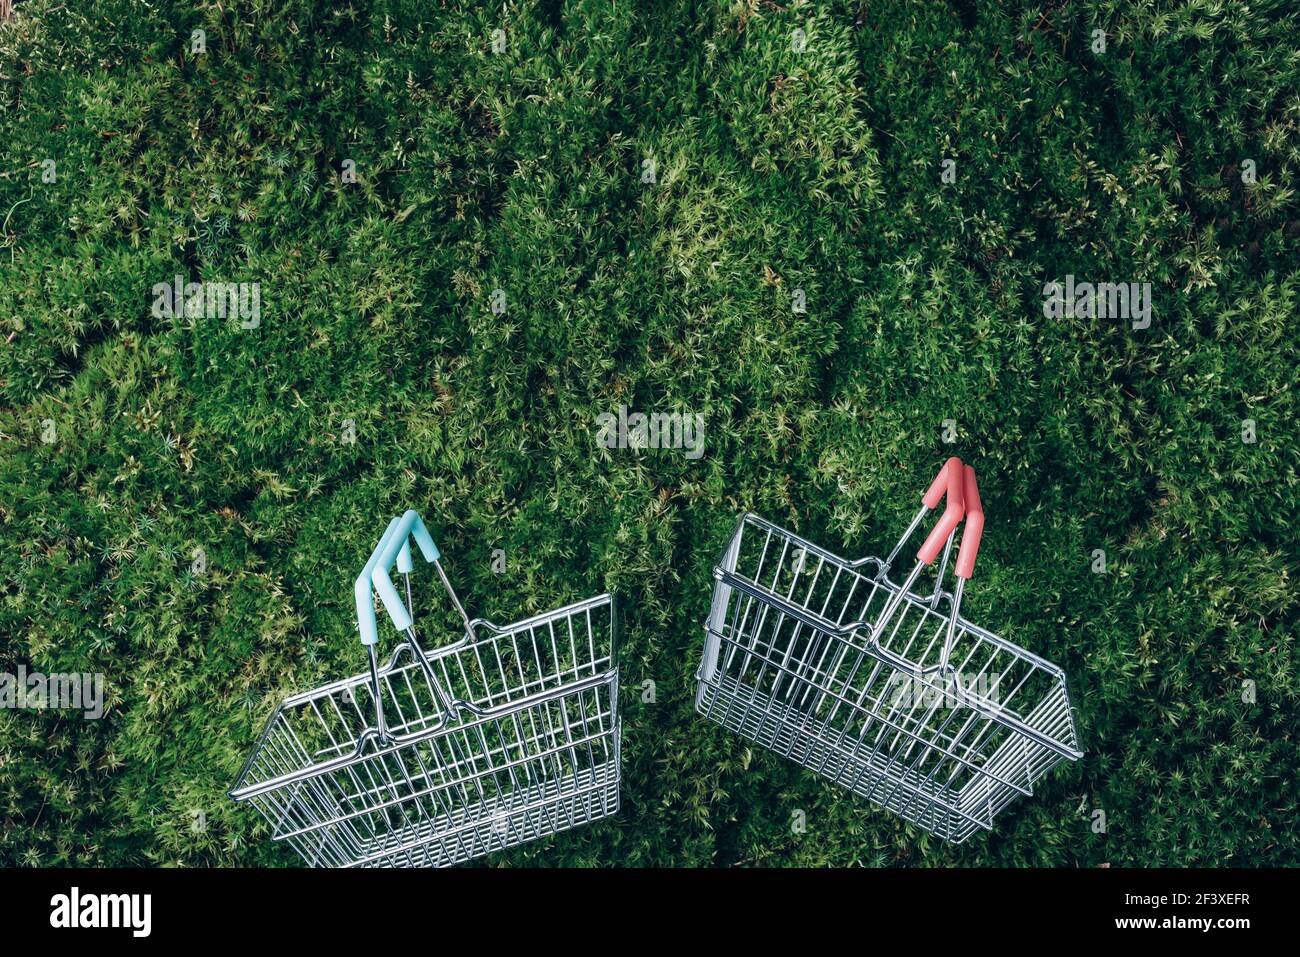 Nachhaltiger Lebensstil. Draufsicht auf Supermarkt-Warenkorb auf grünem Gras, Moos Hintergrund. Black friday Verkauf, Rabatt, shopaholism, Ökologie Stockfoto